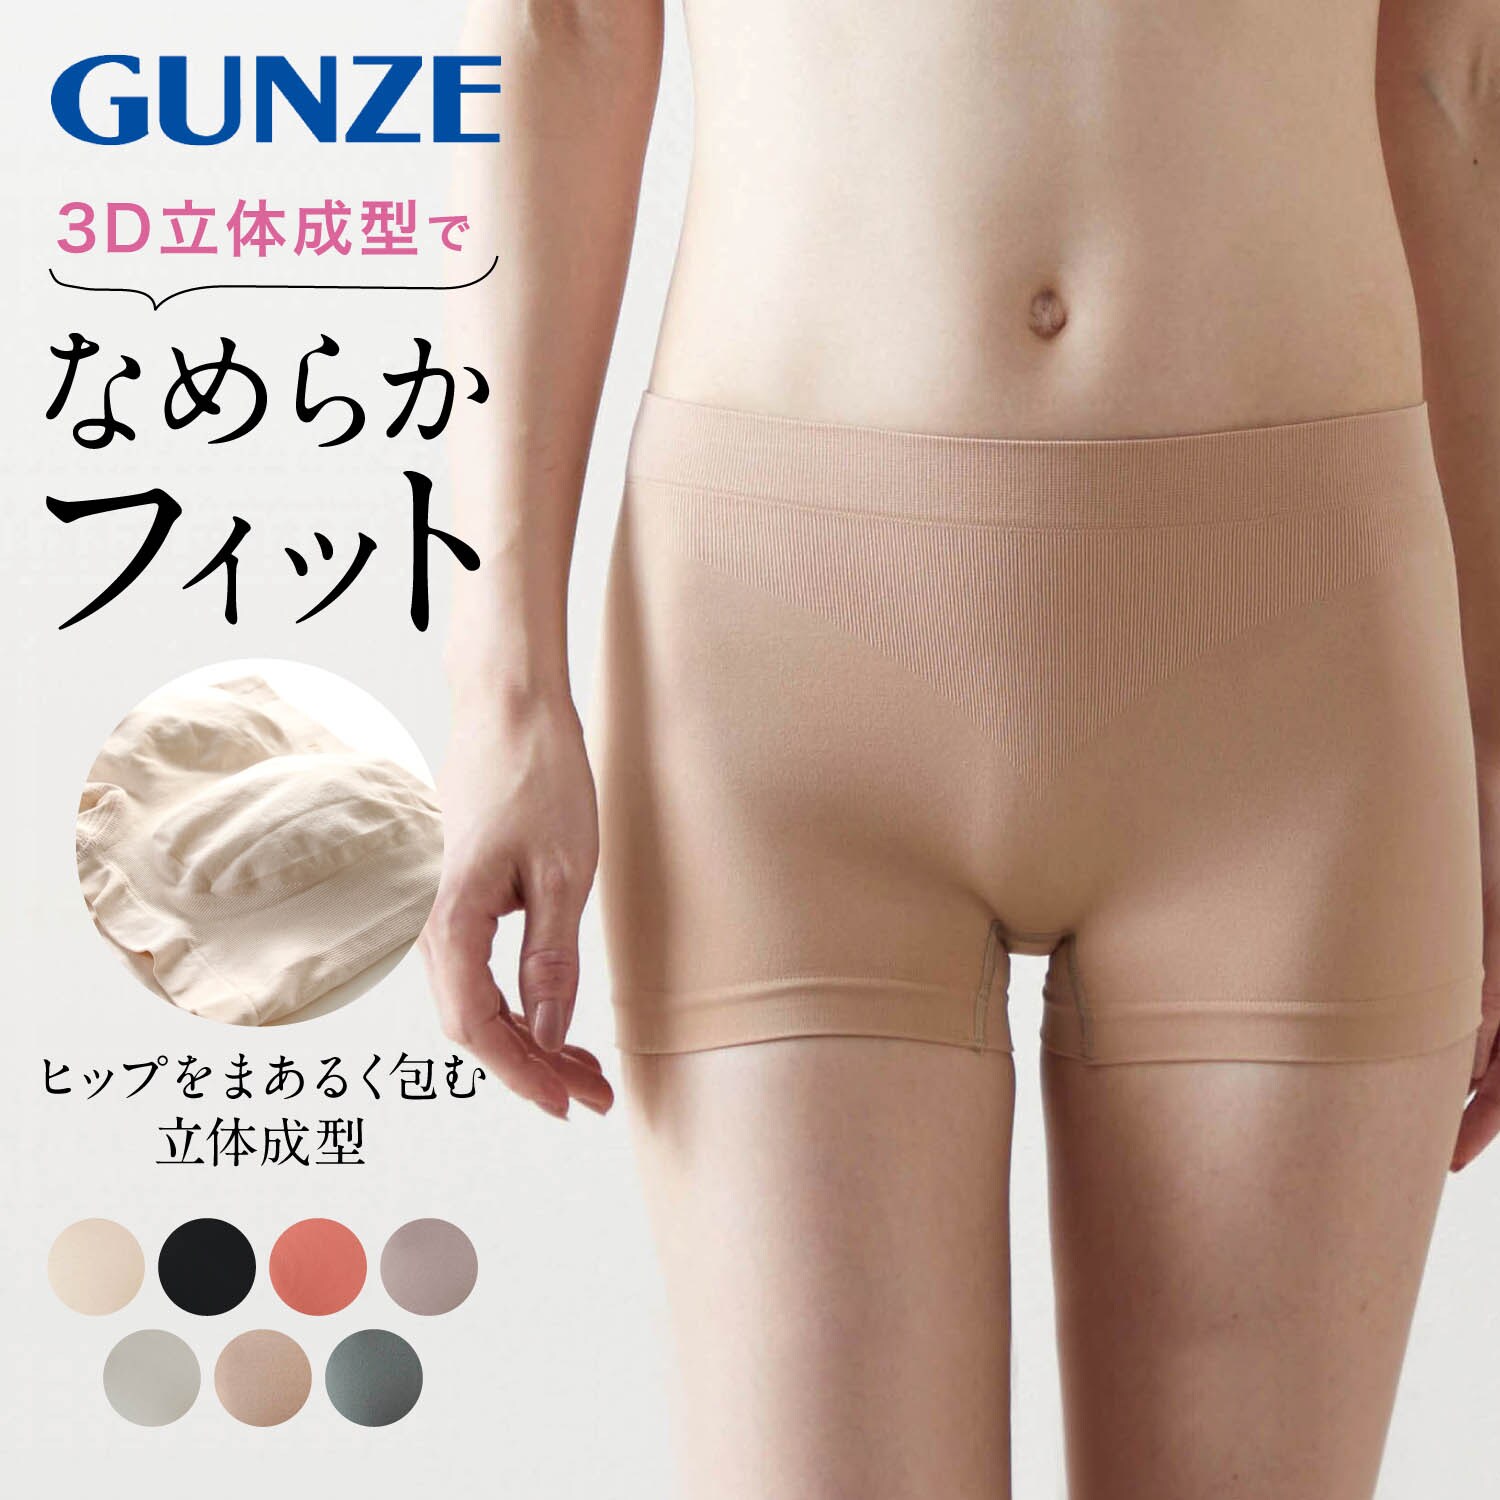 【グンゼ/GUNZE】【5月8日までまとめ買いでお得】 Tuche 3D立体成型レギュラーショーツ